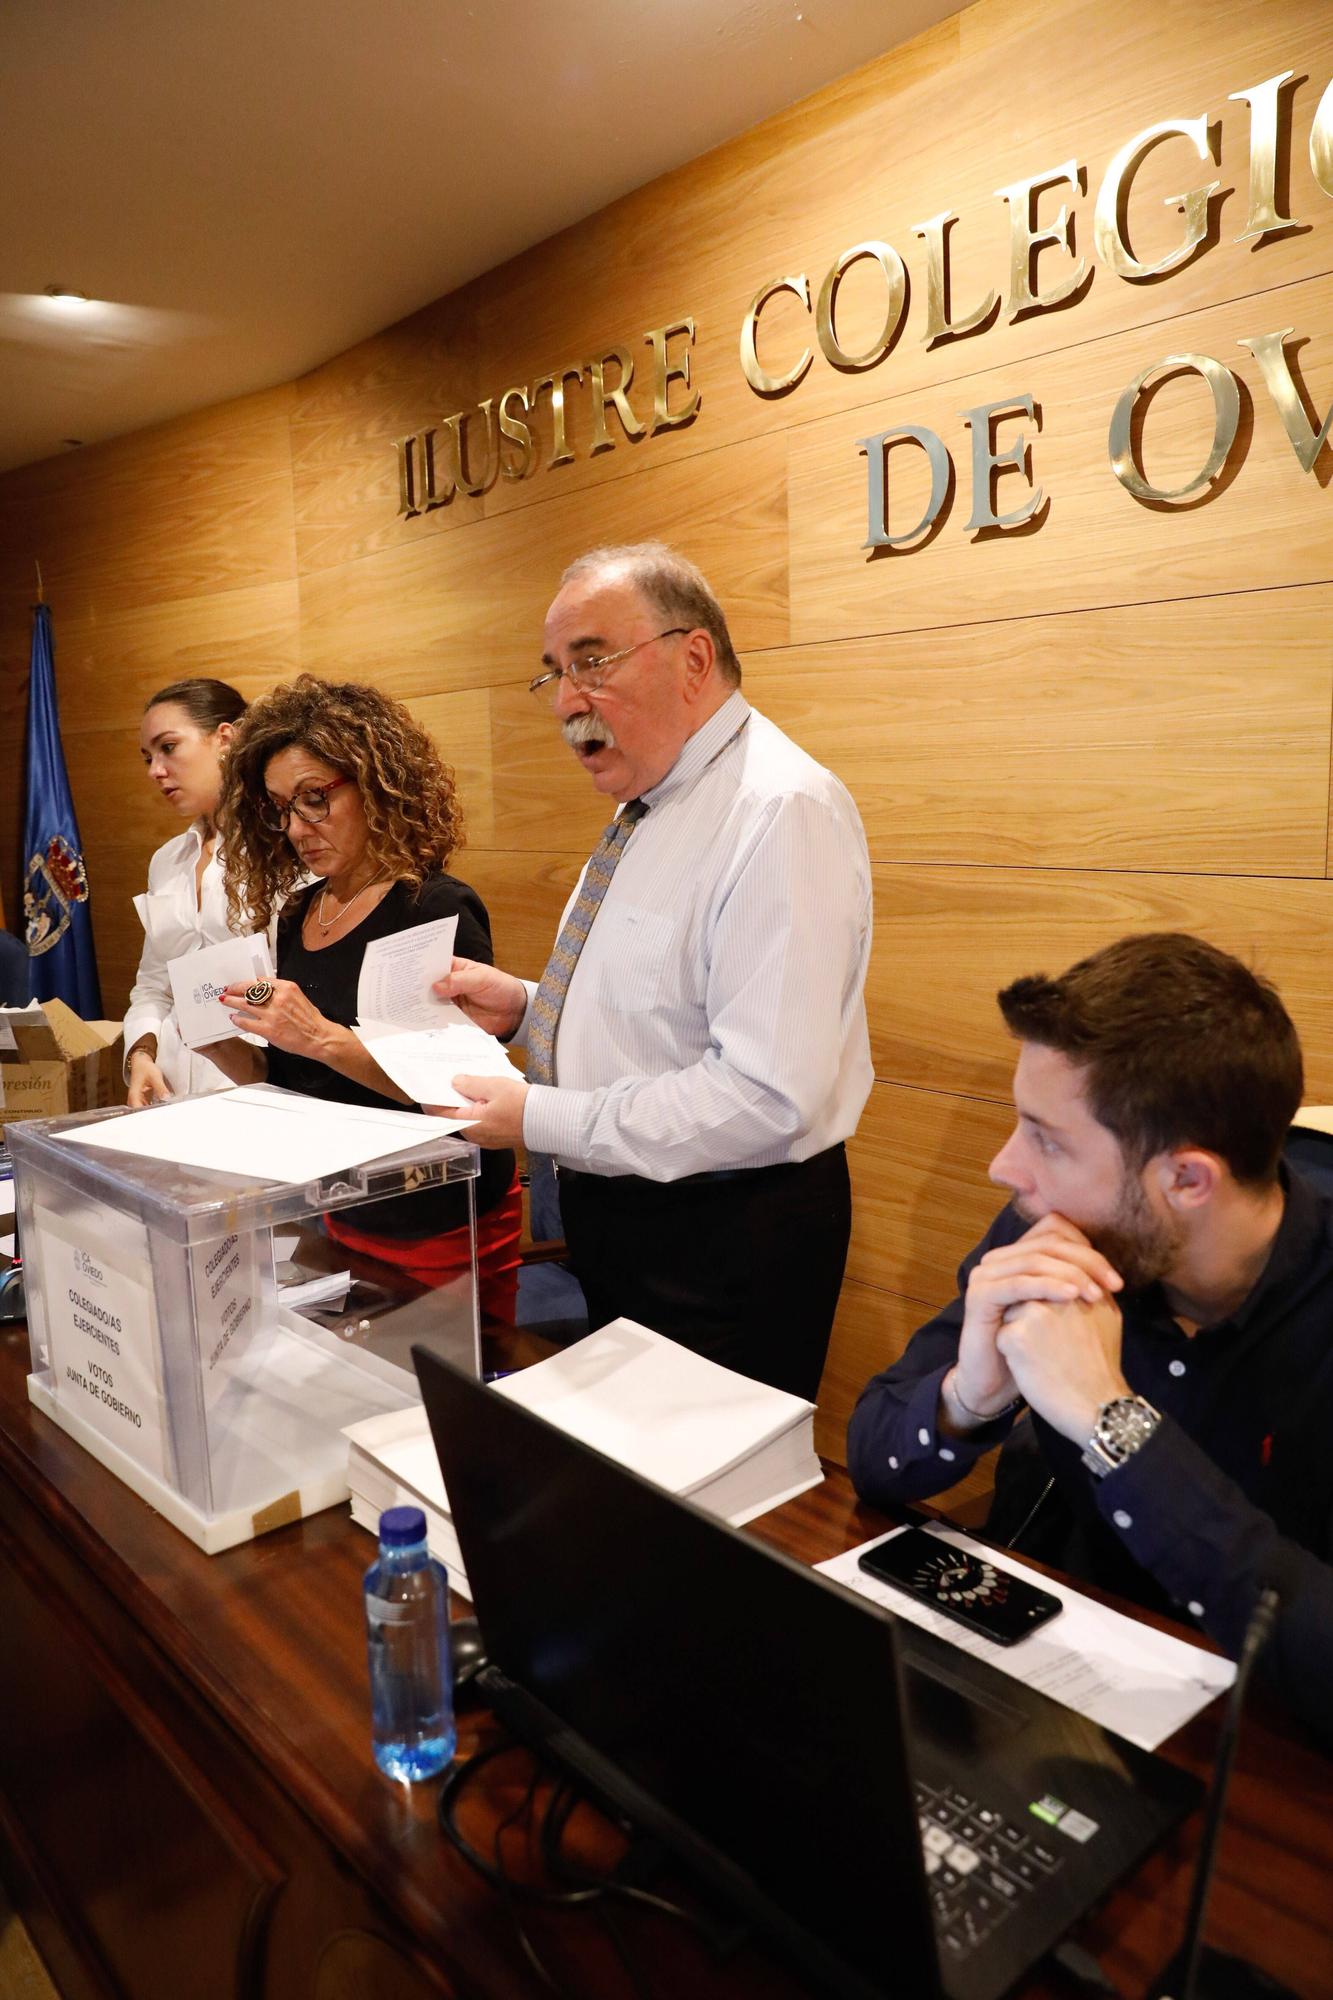 En imágenes: Así fueron las elecciones al decanato del Ilustre Colegio de Abogados de Oviedo